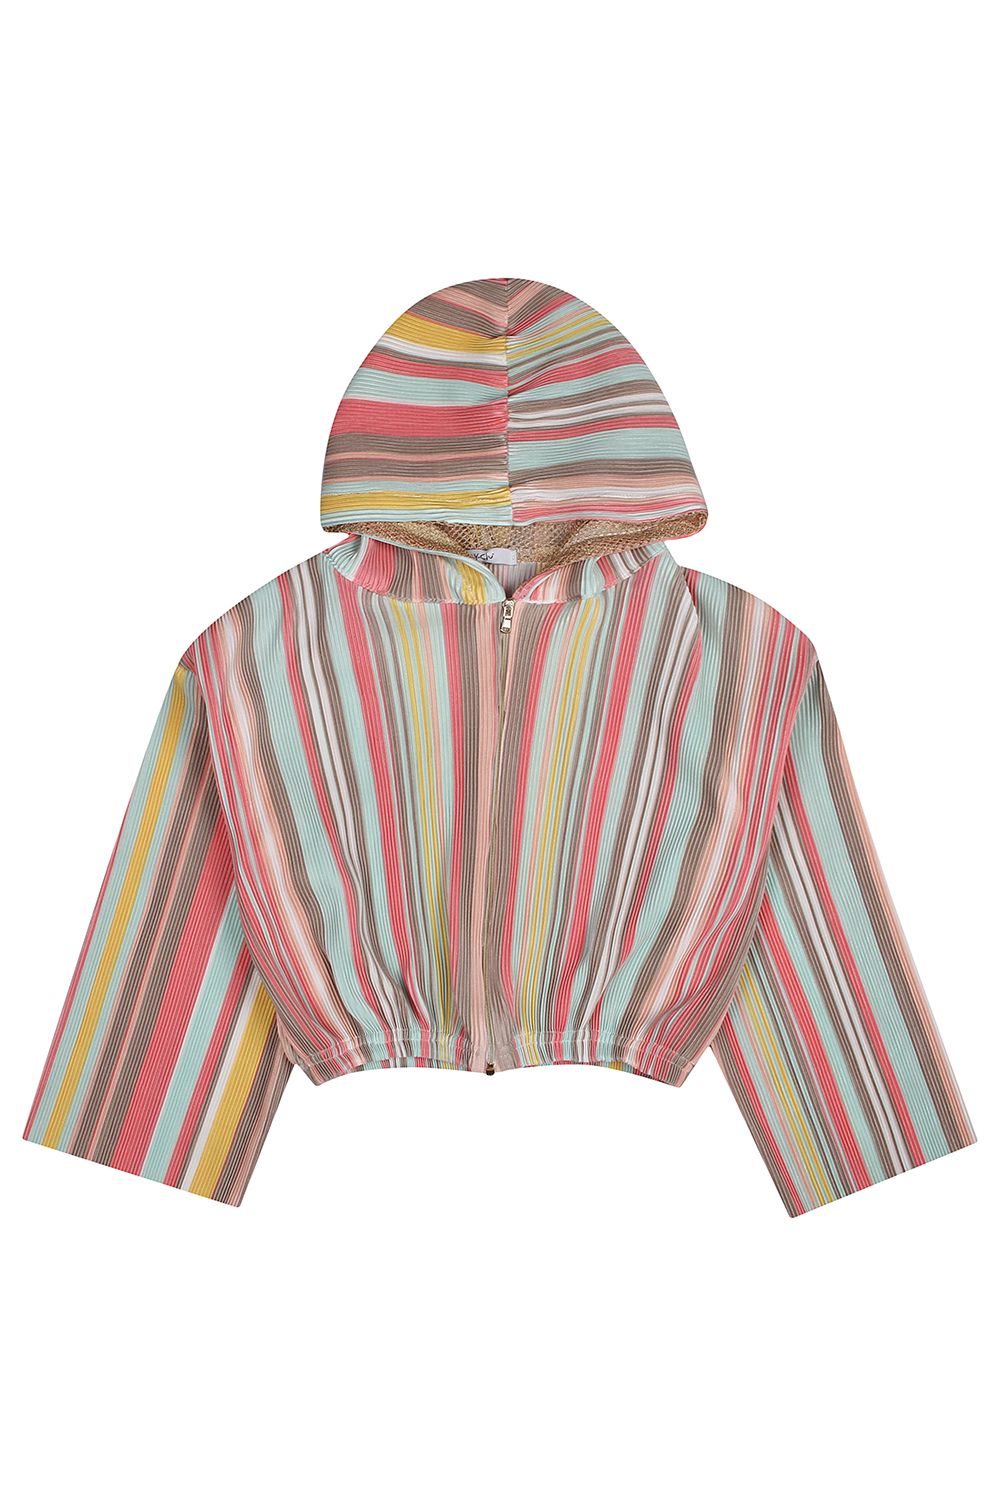 Куртка Y-clu', размер 128, цвет разноцветный Y13194 - фото 2